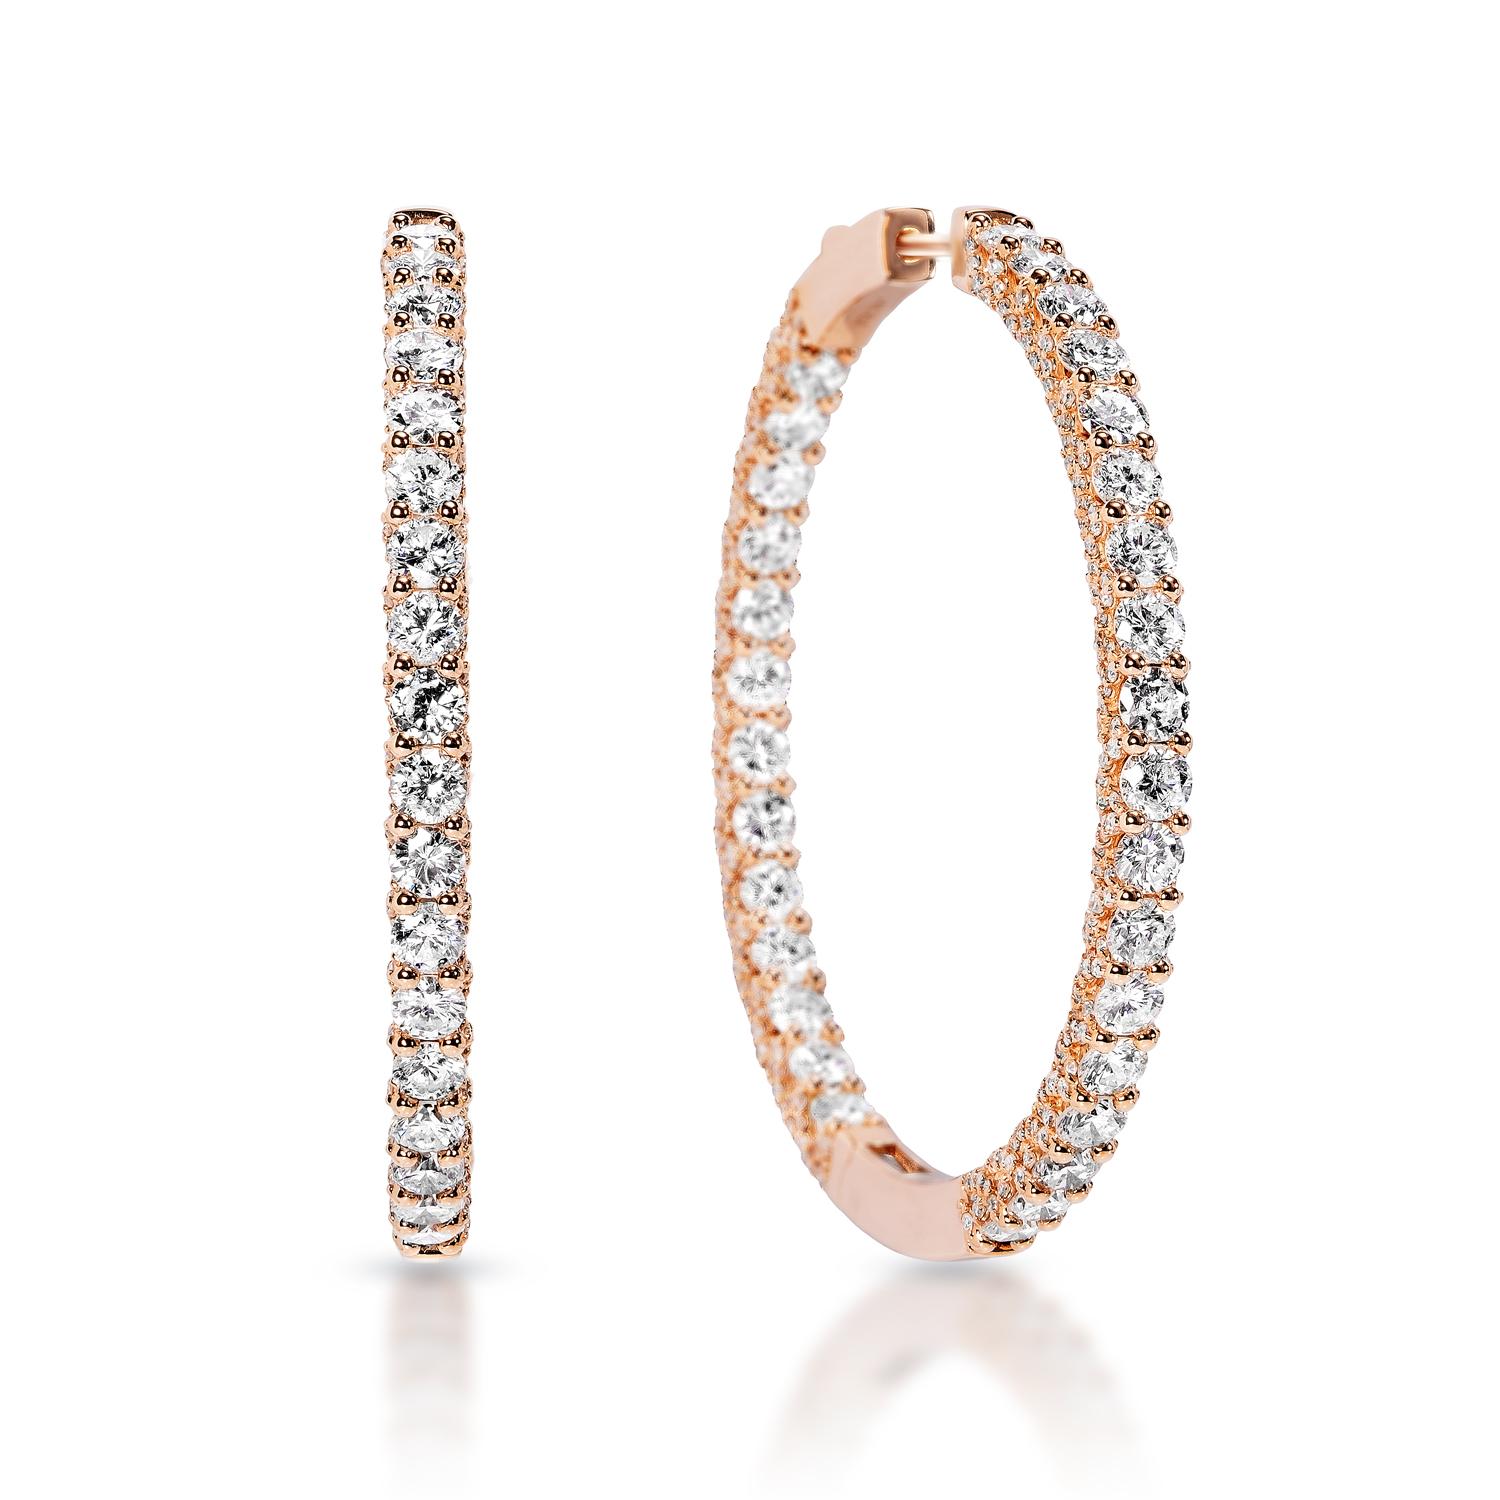 Boucles d'oreilles en diamant :

Poids en carats : 9,01 carats
Forme : Coupe brillante ronde
Métal : or rose 14 carats
Style : Boucles d'oreilles